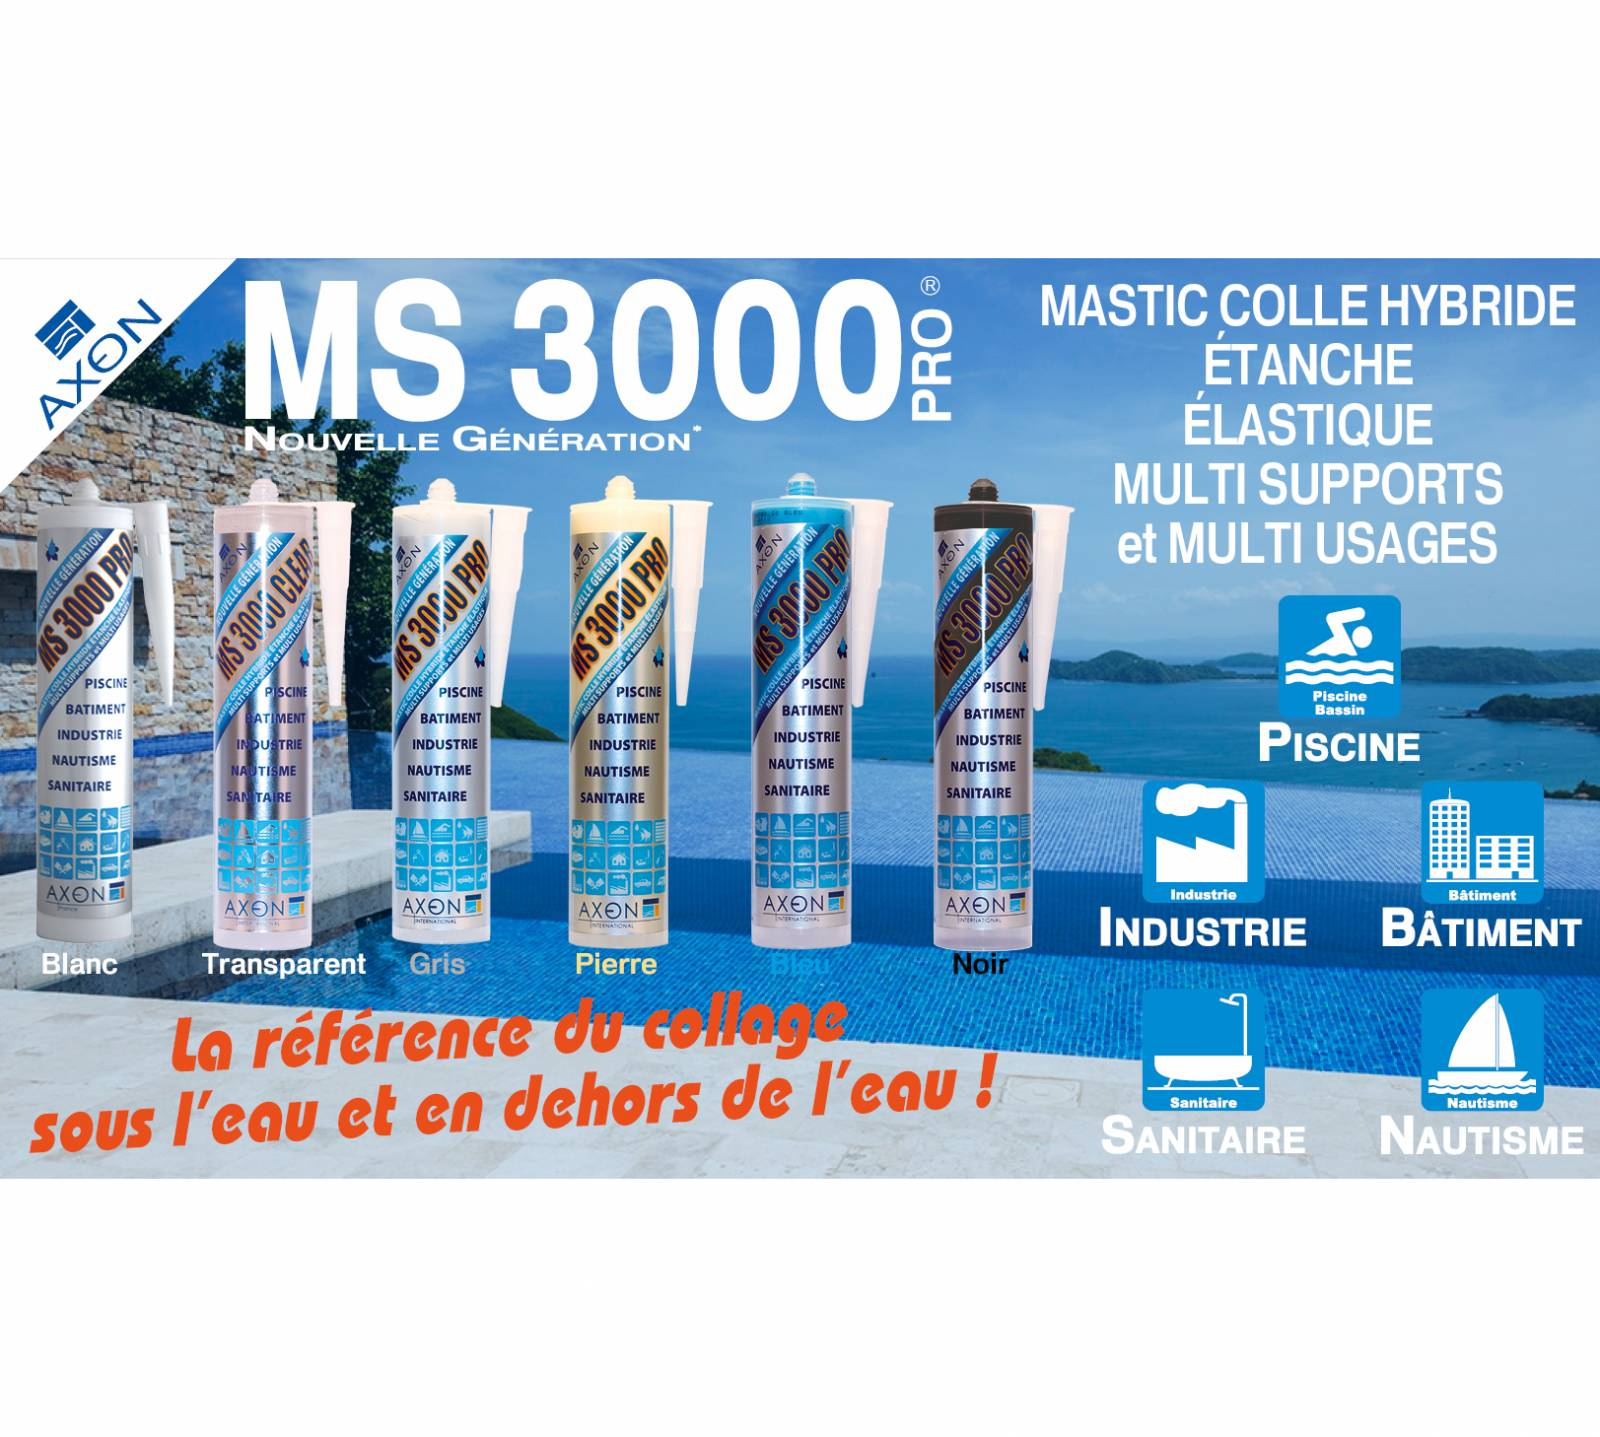 Ms 3000 Pro Le Super Mastic Colle Universel Spéciale Piscine ... tout Rustine Pour Piscine